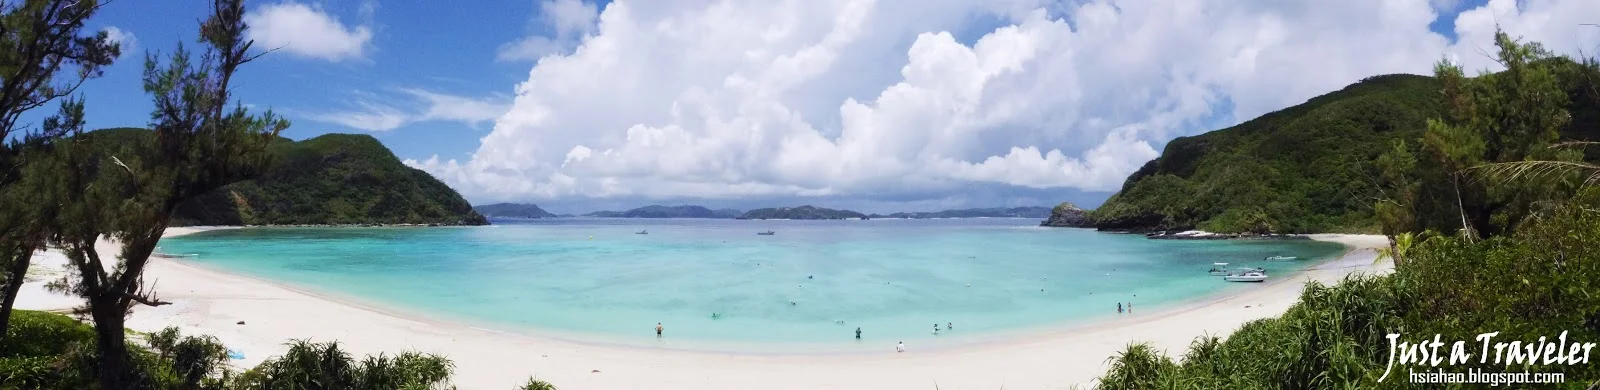 沖繩-海灘-推薦-渡嘉志久海灘-Tokashiku Beach-とかしくビーチ-Okinawa-beach-recommendation